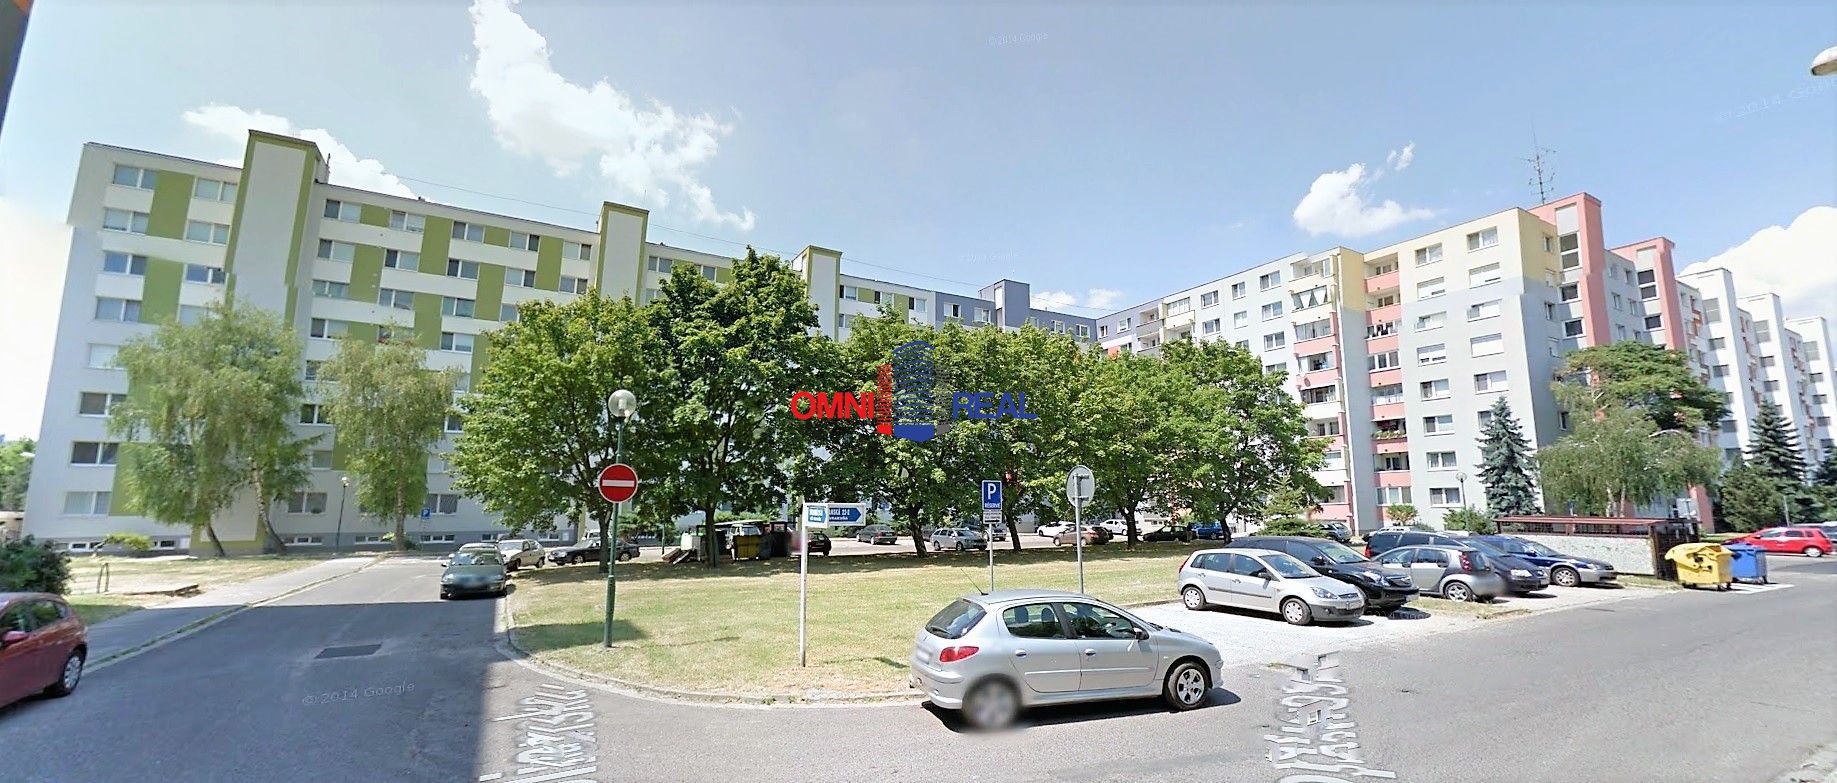 Hľadám 4. izbový byt na kúpu v lokalite Bratislava – Vrakuňa